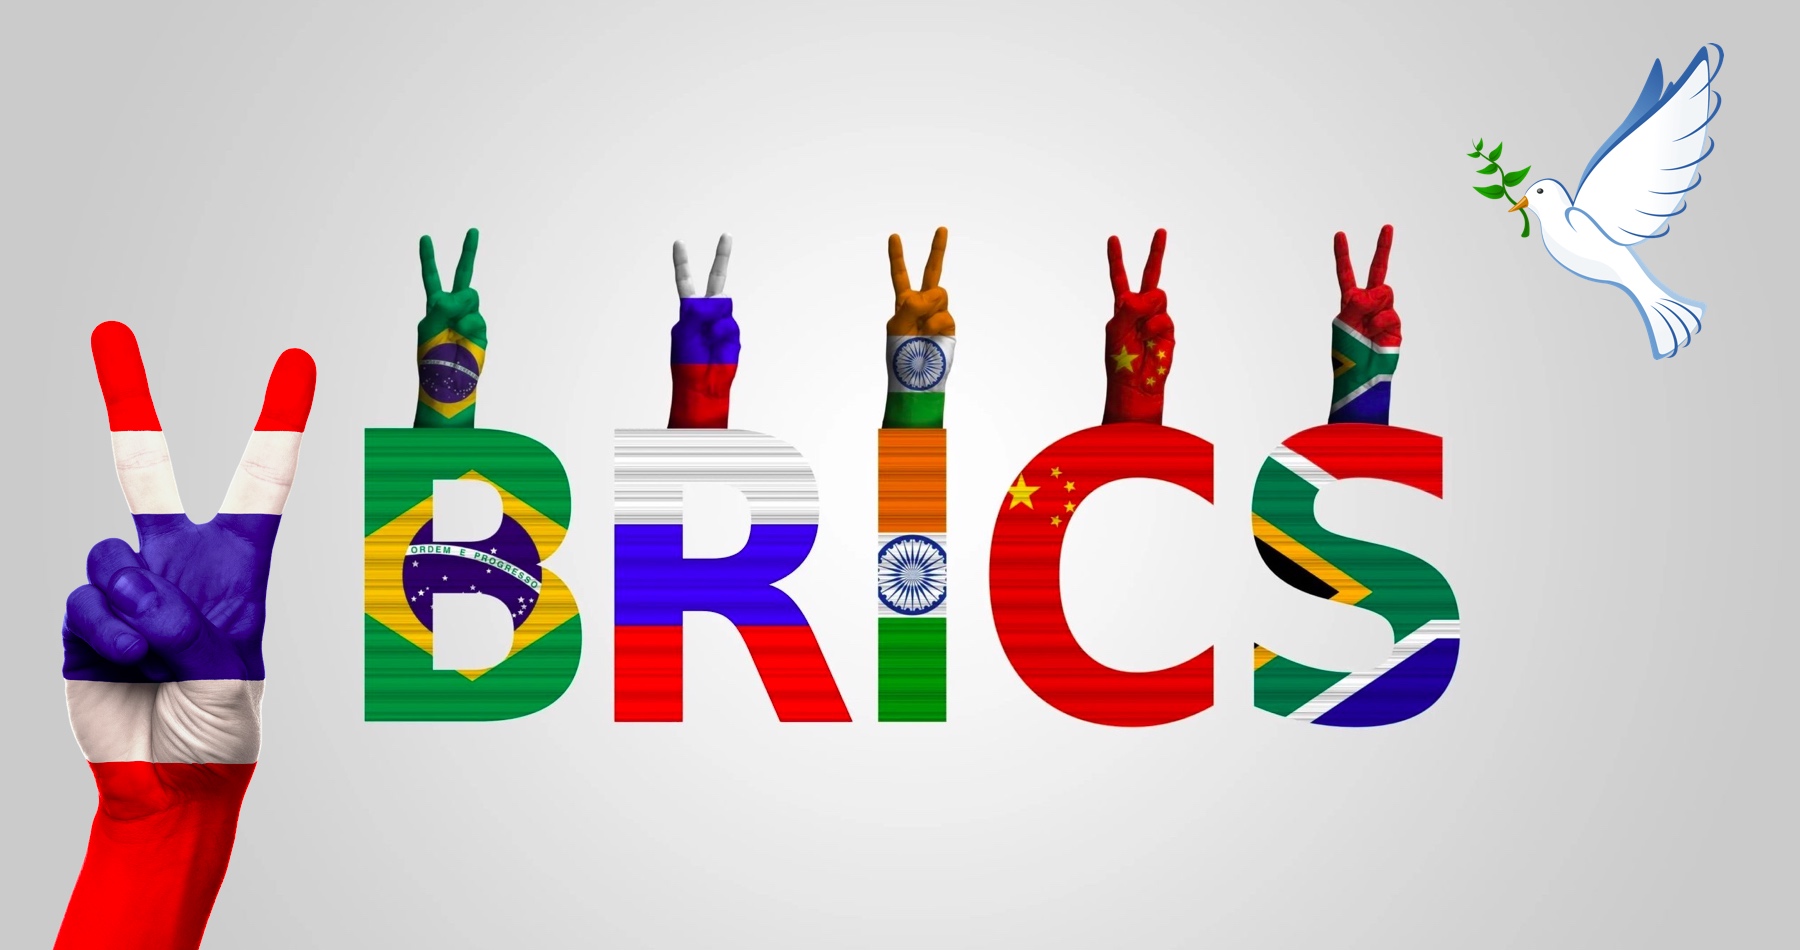 Thajsko  požiadalo o vstup do BRICS. Ide o ďalšiu krajinu, ktorá pochopila prebiehajúcu transformáciu sveta a význam jeho nadchádzajúceho multipolárneho usporiadania 